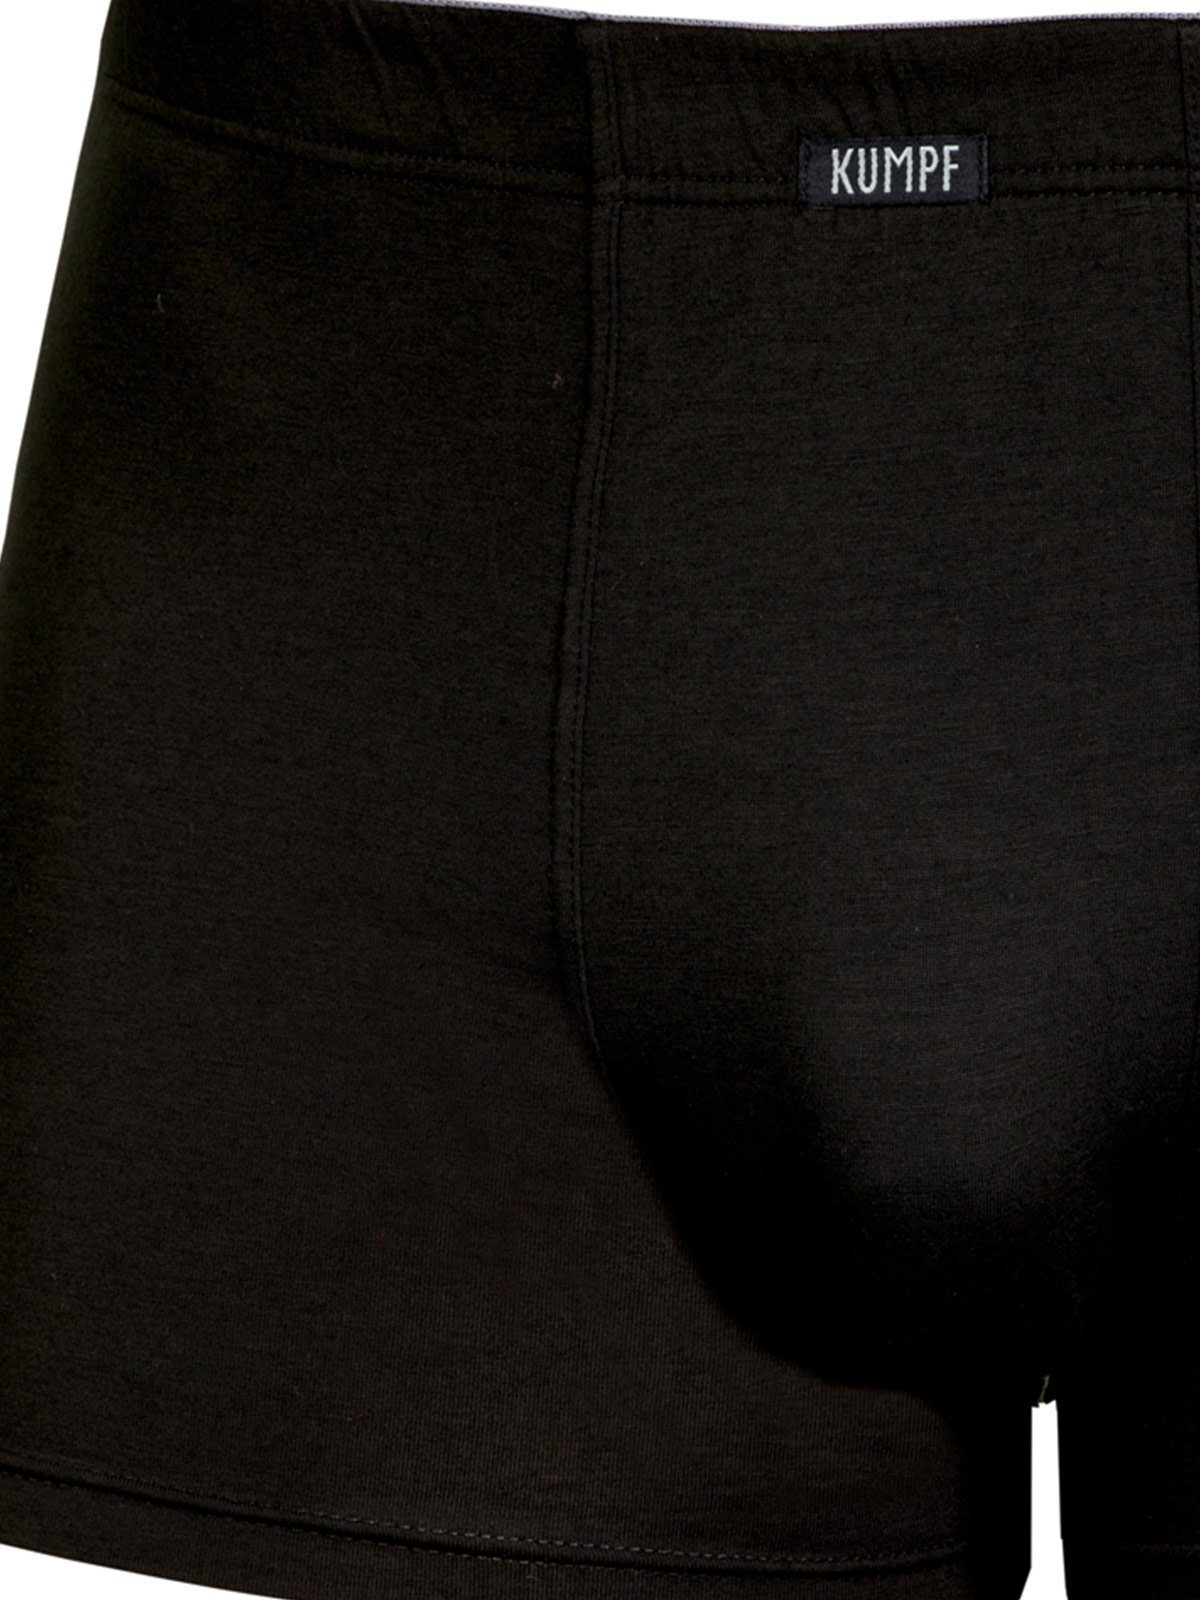 Retro Jersey Materialmix Pants Pants schwarz Herren KUMPF Single 1-St) (Stück,